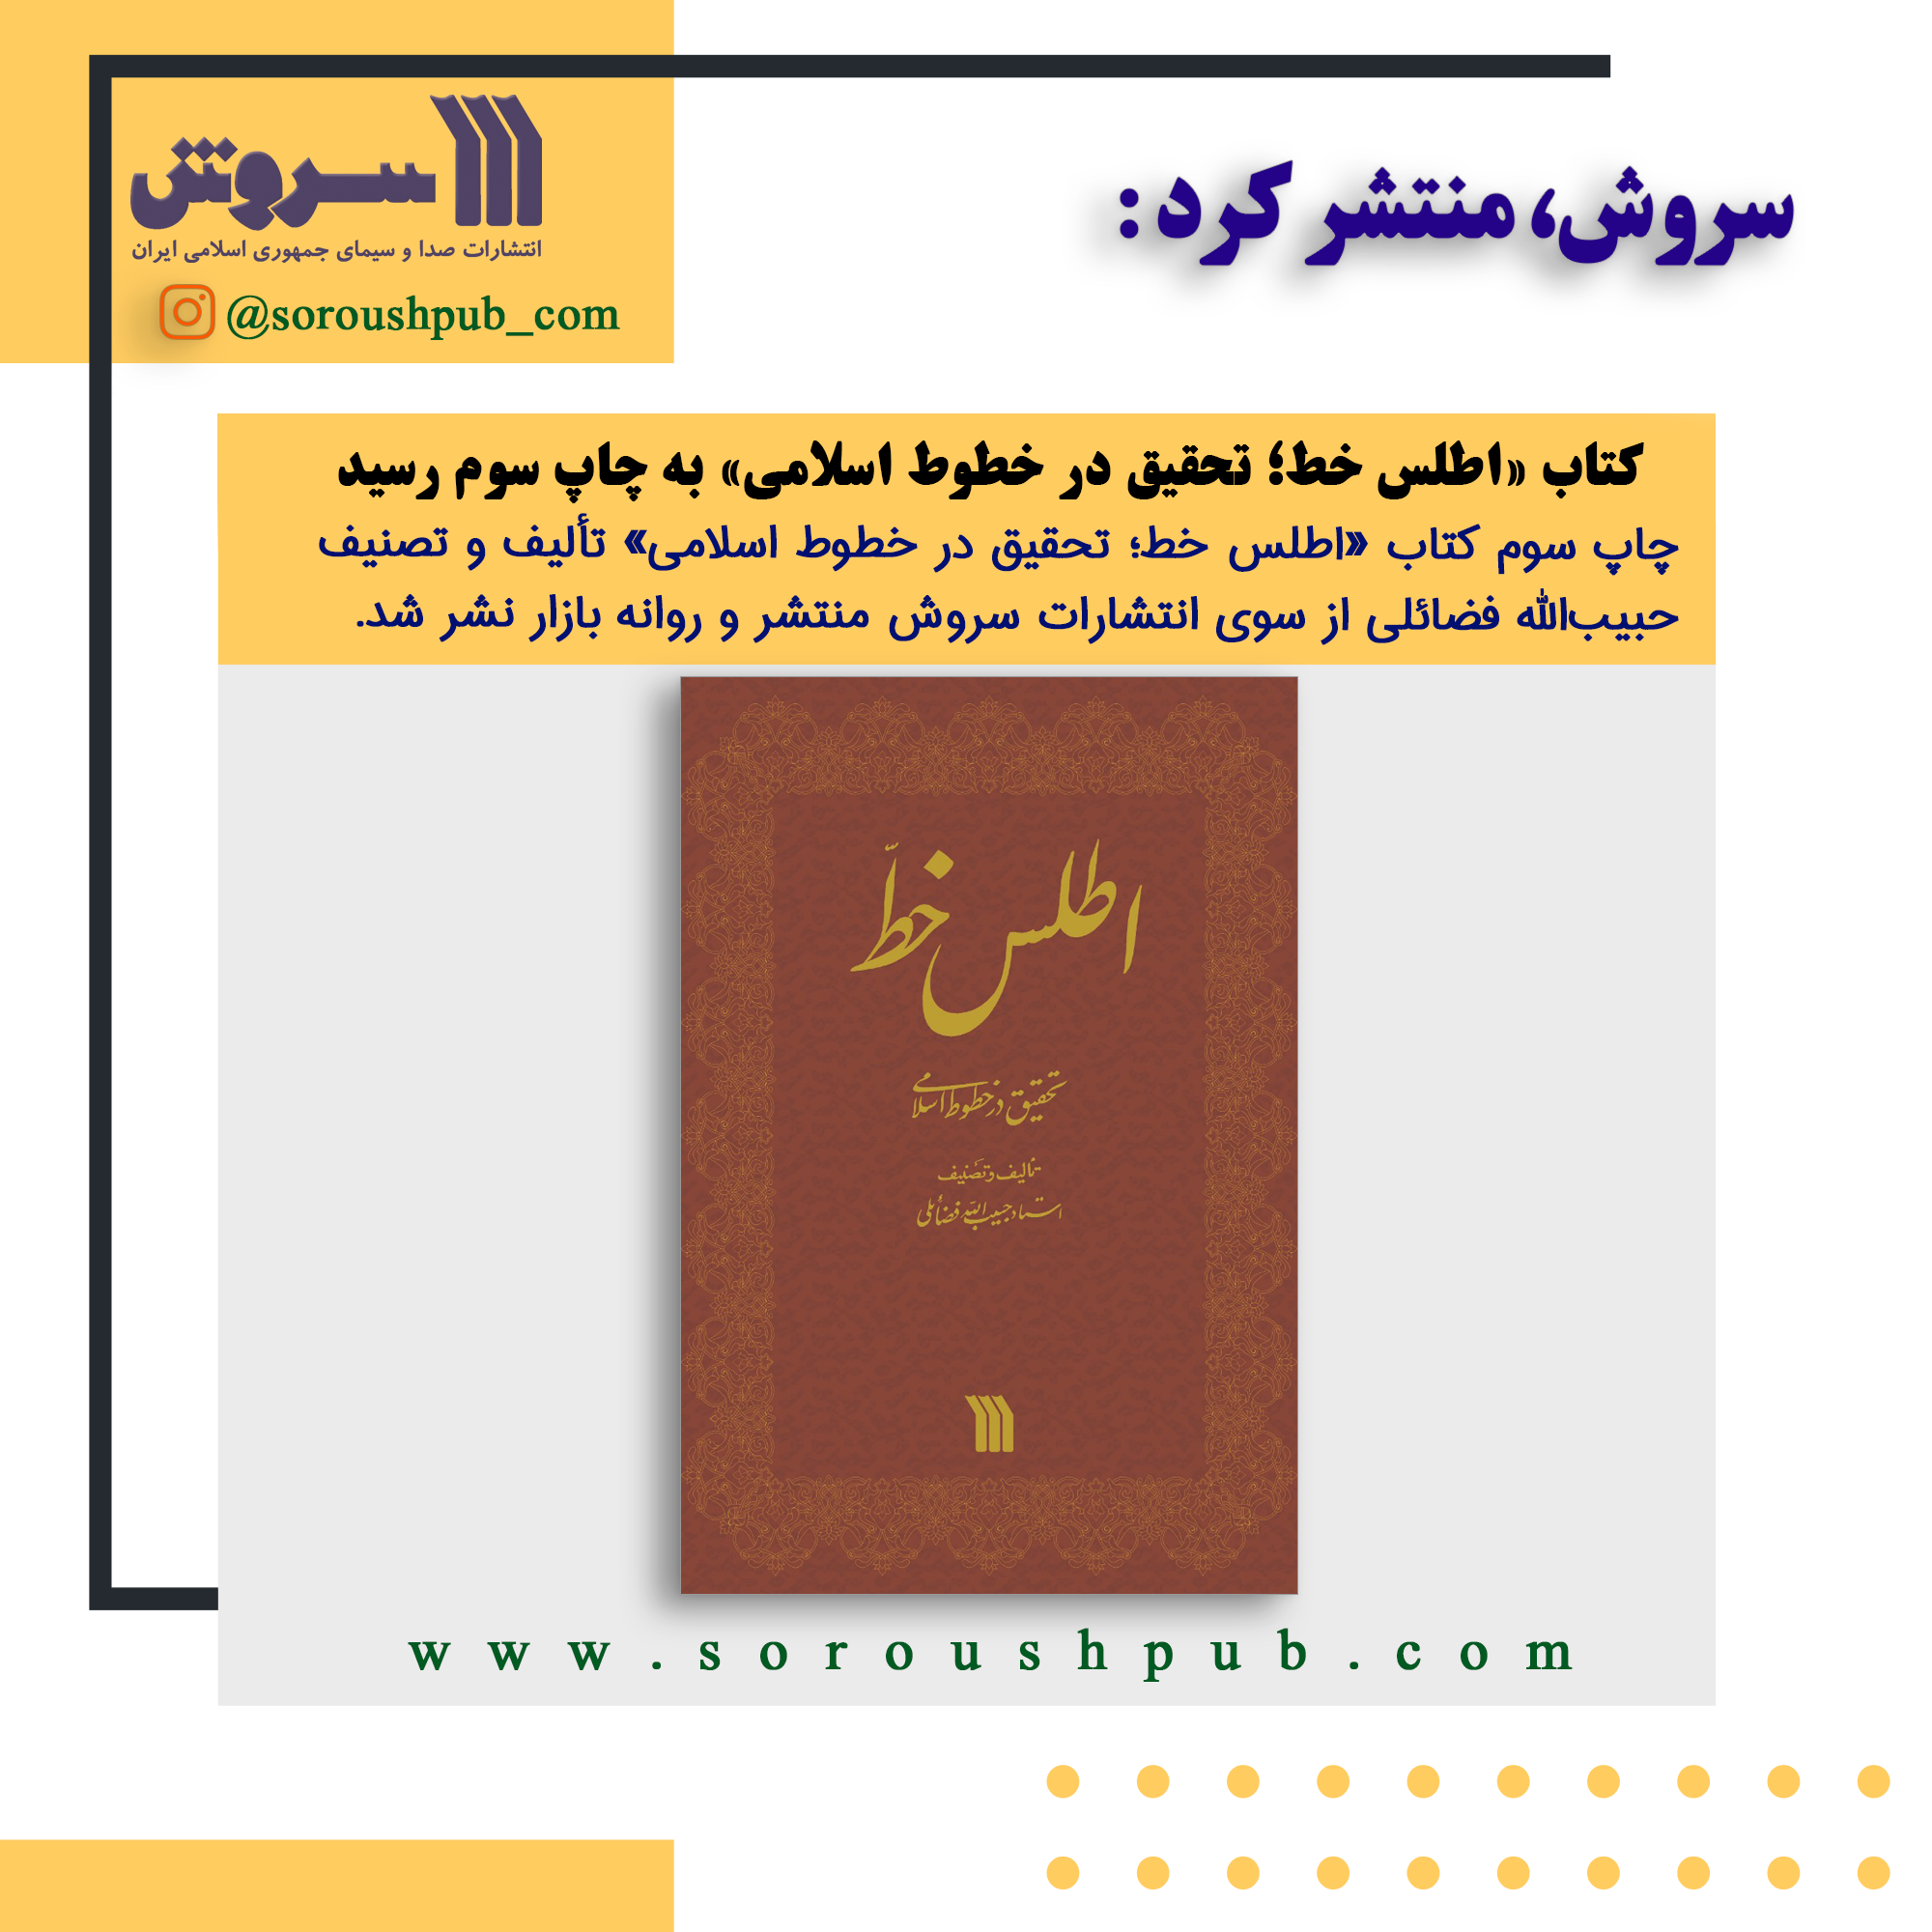 کتاب«اطلس خط؛ تحقیق در خطوط اسلامی» به چاپ سوم رسید